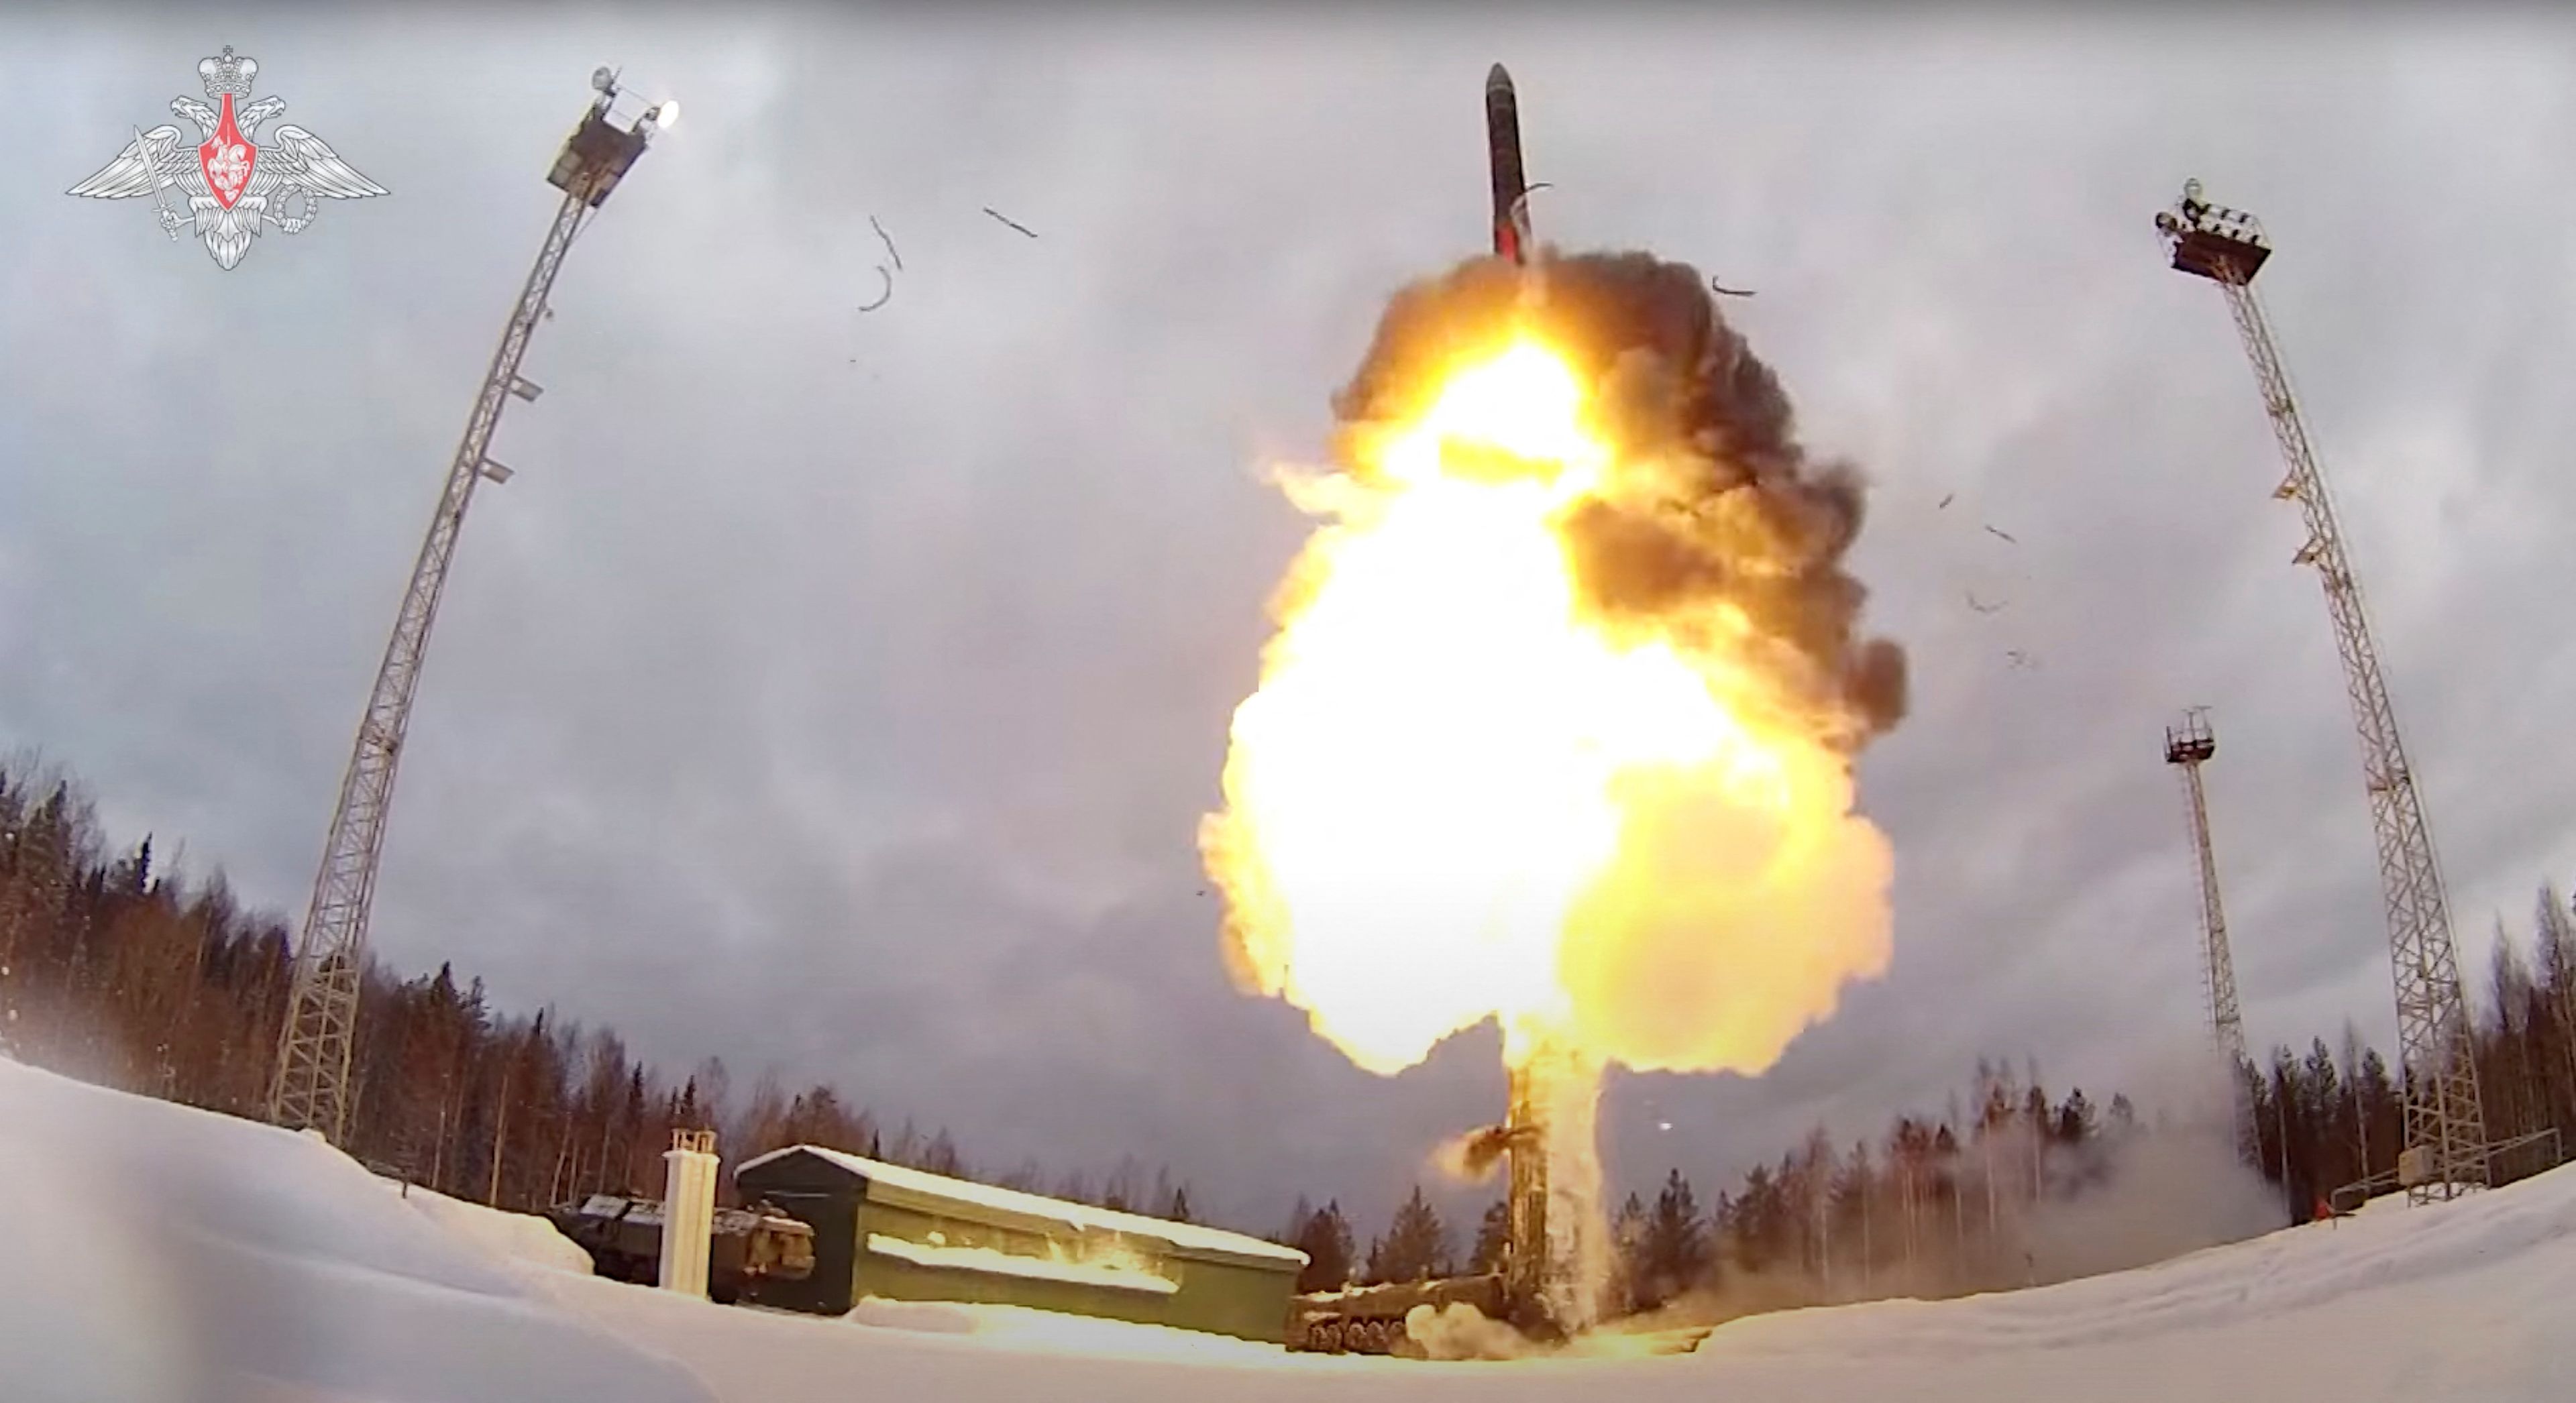 Lanzamiento de un misil balístico intercontinental ruso Yars durante ejercicios de las fuerzas nucleares en Rusia: imagen fija de un vídeo publicado el 19 de febrero de 2022.